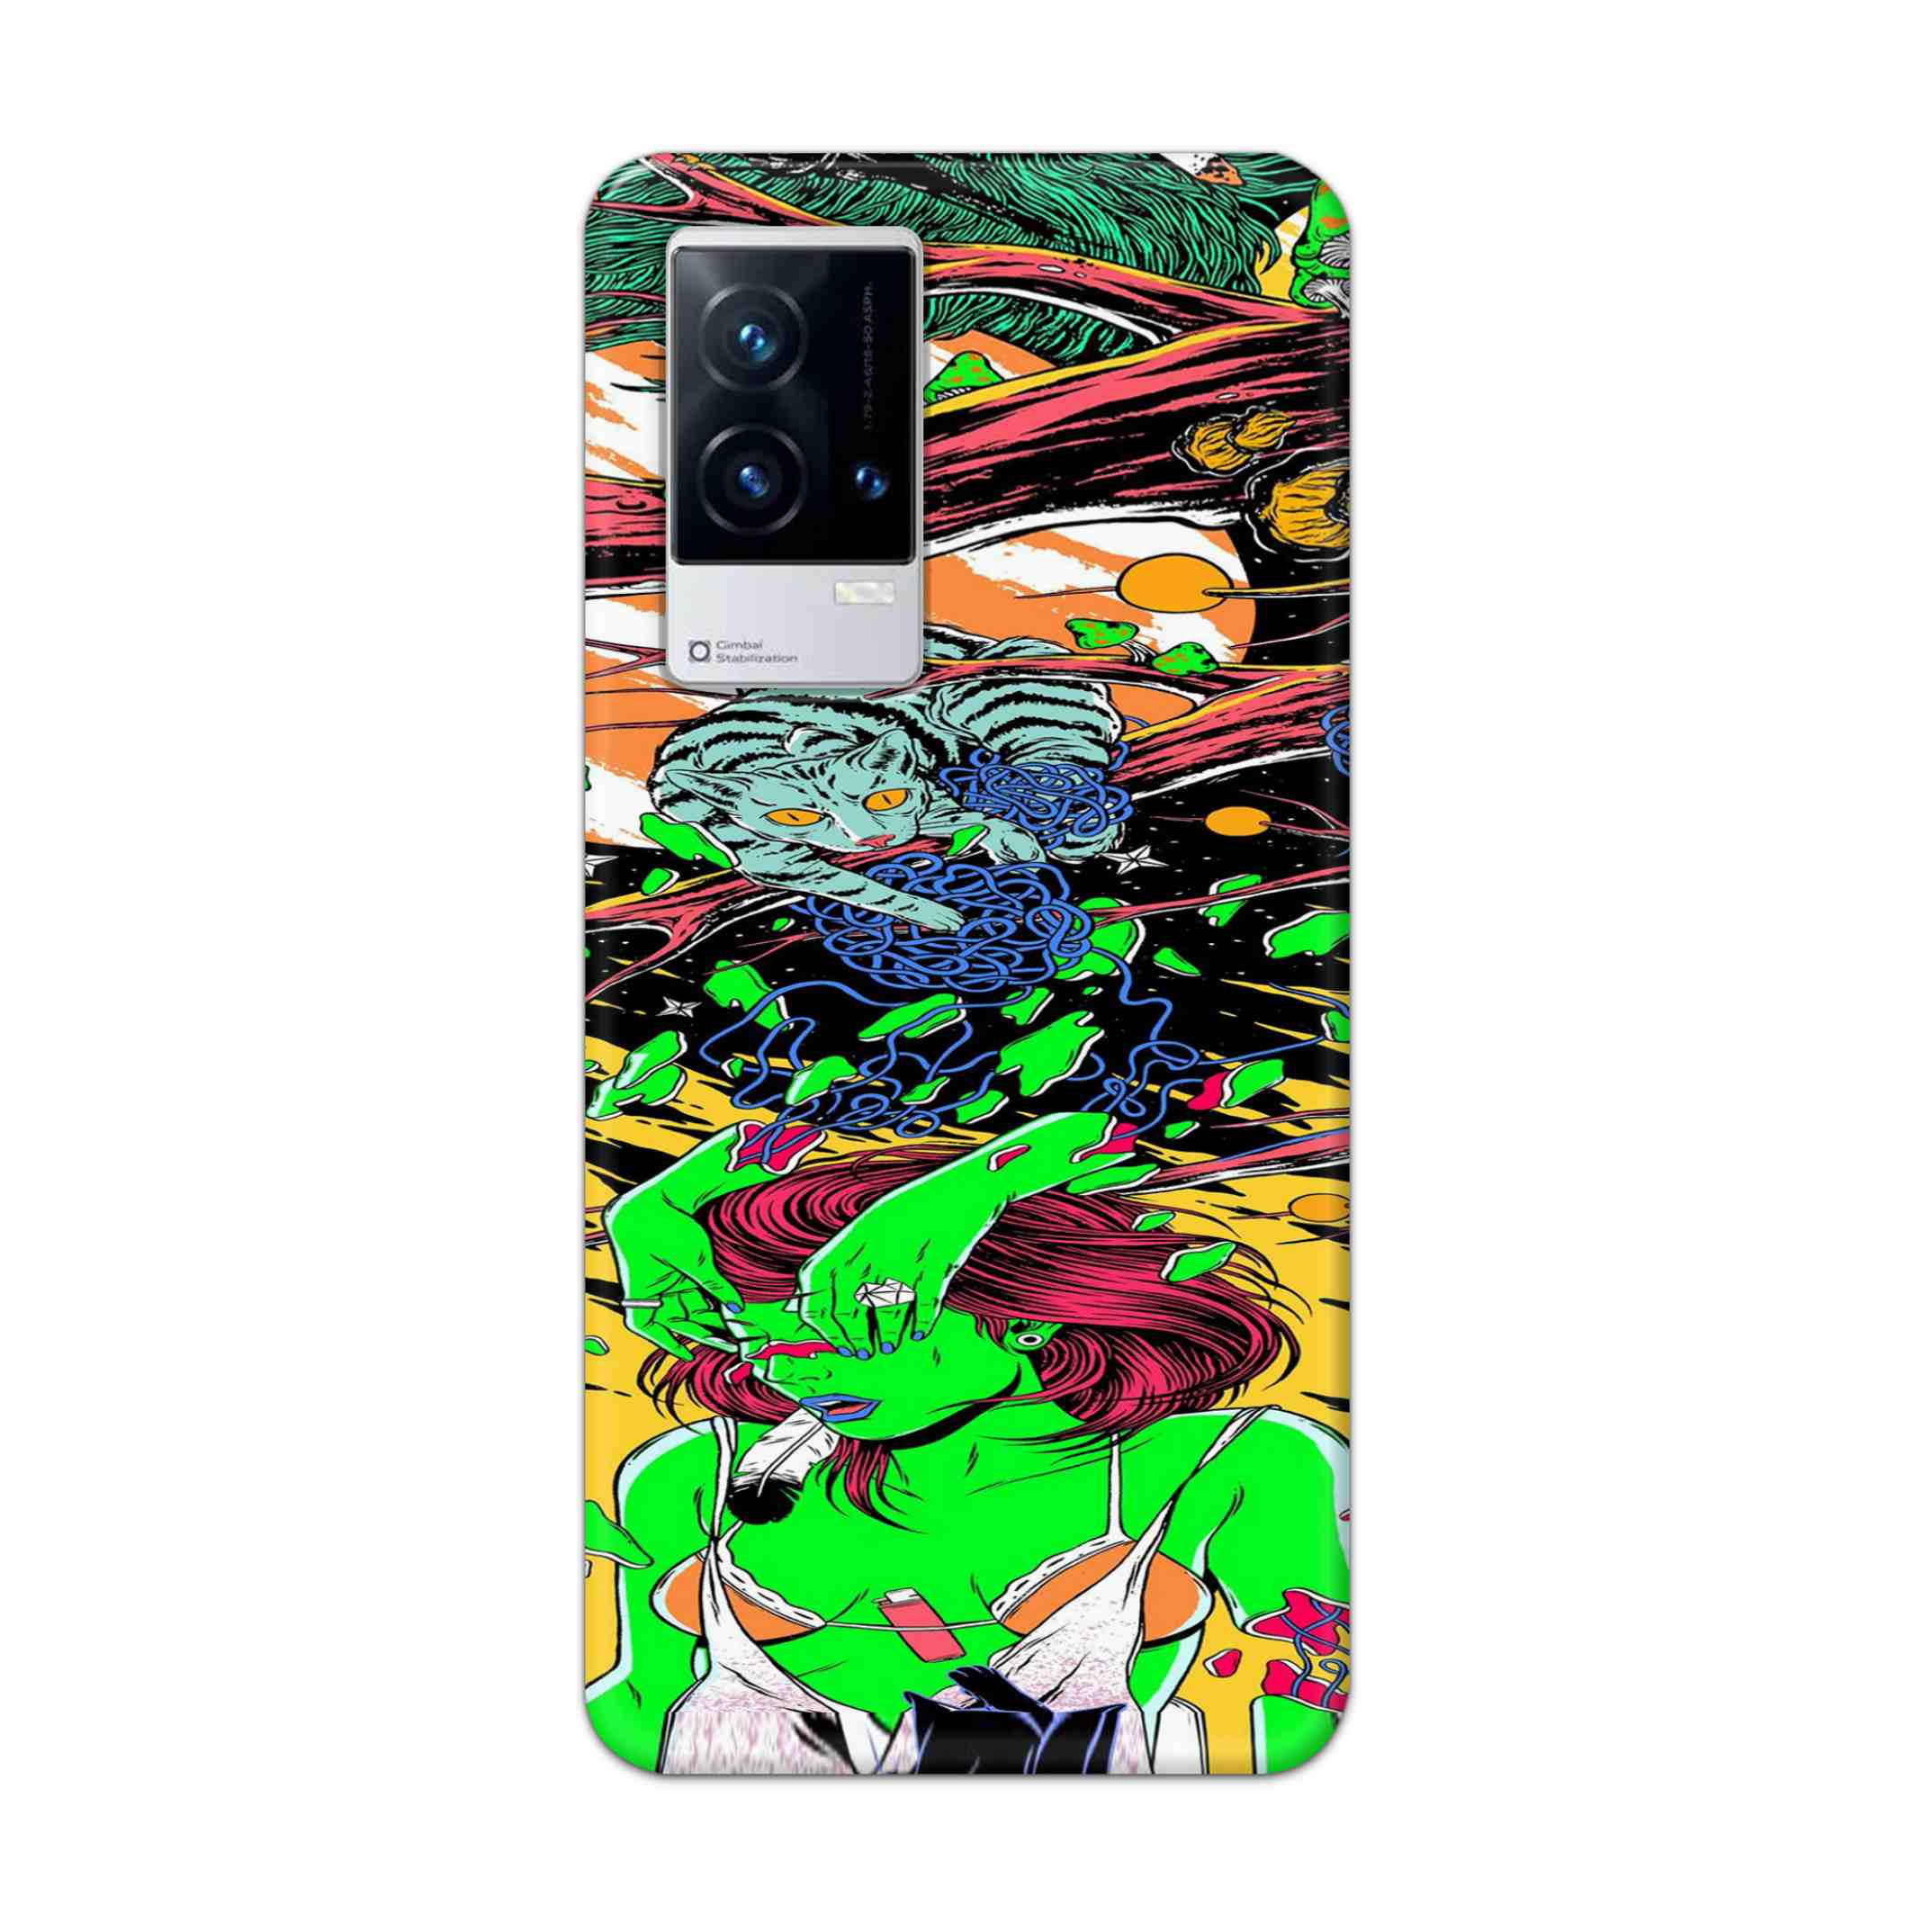 Buy Green Girl Art Hard Back Mobile Phone Case Cover For Vivo iQOO 9 5G Online